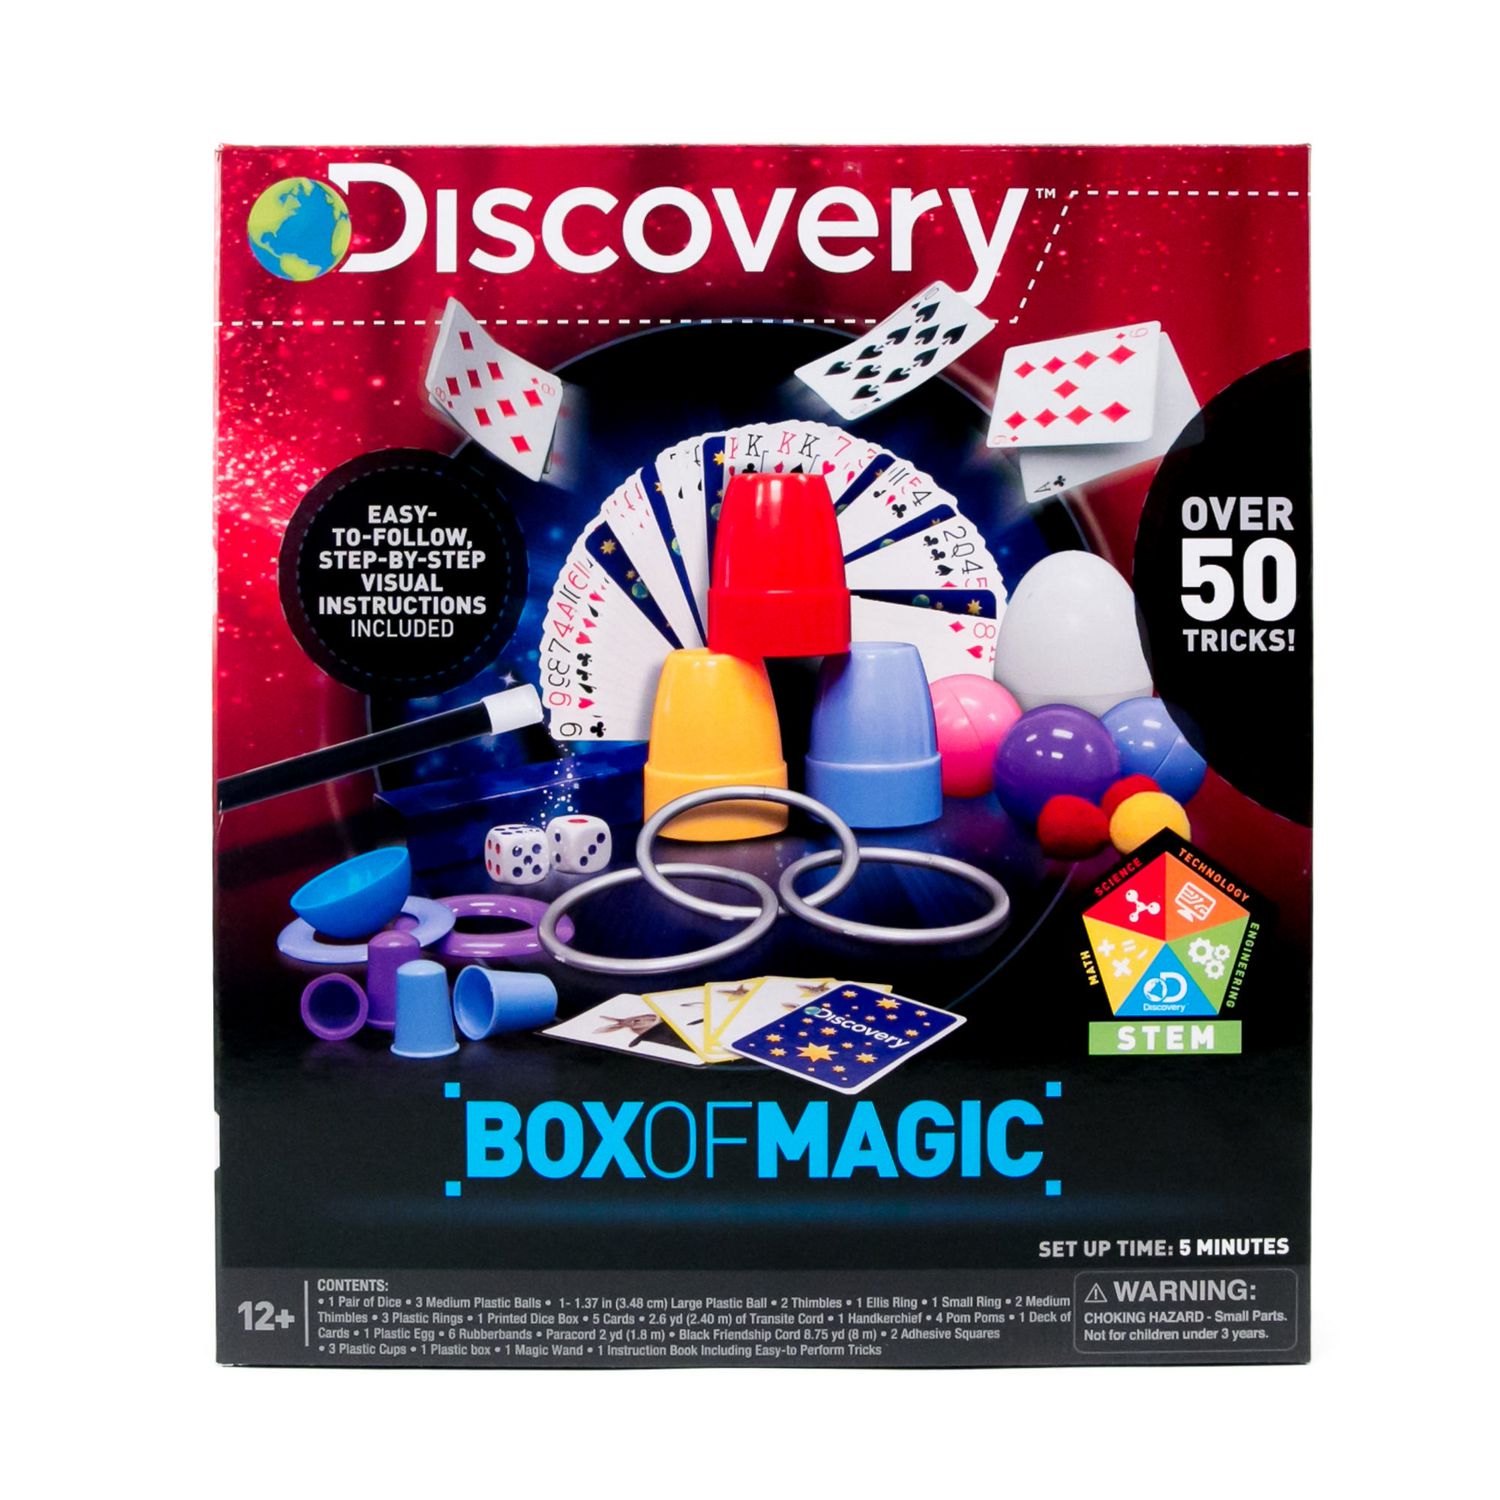 Science4you Science de la Magie - Boite de Magie pour Enfant - Apprenez la  magie avec la Coffret de Magie pour Enfant - Jeux pour Enfant 8+ ans avec  Kit de magie 